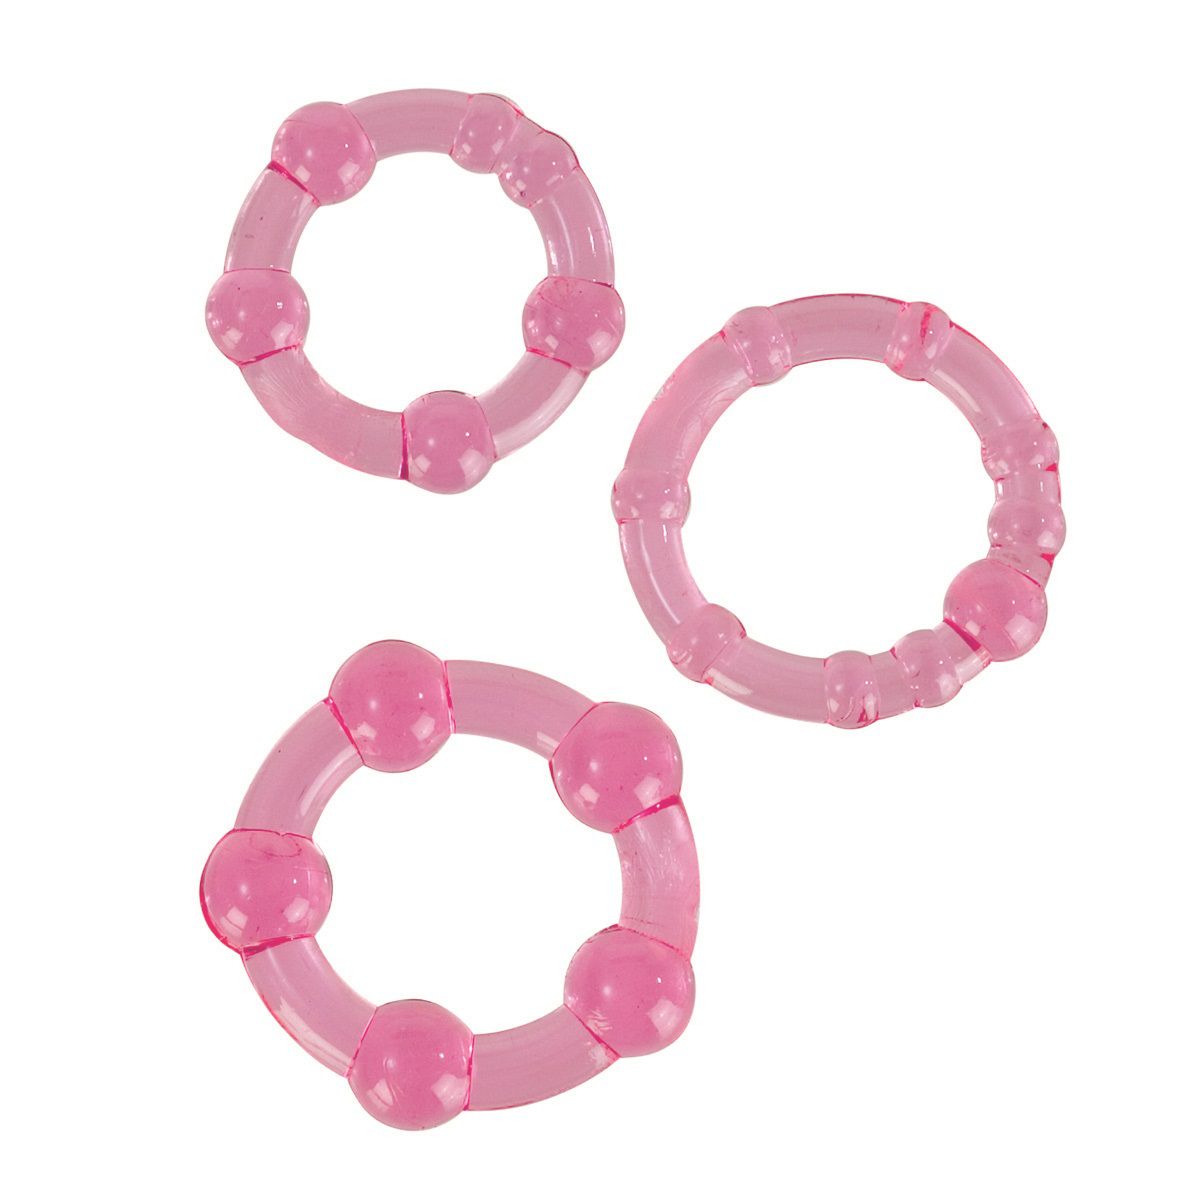 Комплект из 3 эрекционных колец Island Rings  розового цвета.В комплекте идет 3 кольца разного диаметра и различной формы.  Использовать можно  по отдельности или сочетать вместе. Эрекционное кольцо препятствует оттоку крови,  предотвращает преждевременную эякуляцию. Служит  для продления интимной близости.  Диаметр колец - 1,7, 2 и 2,1 см.